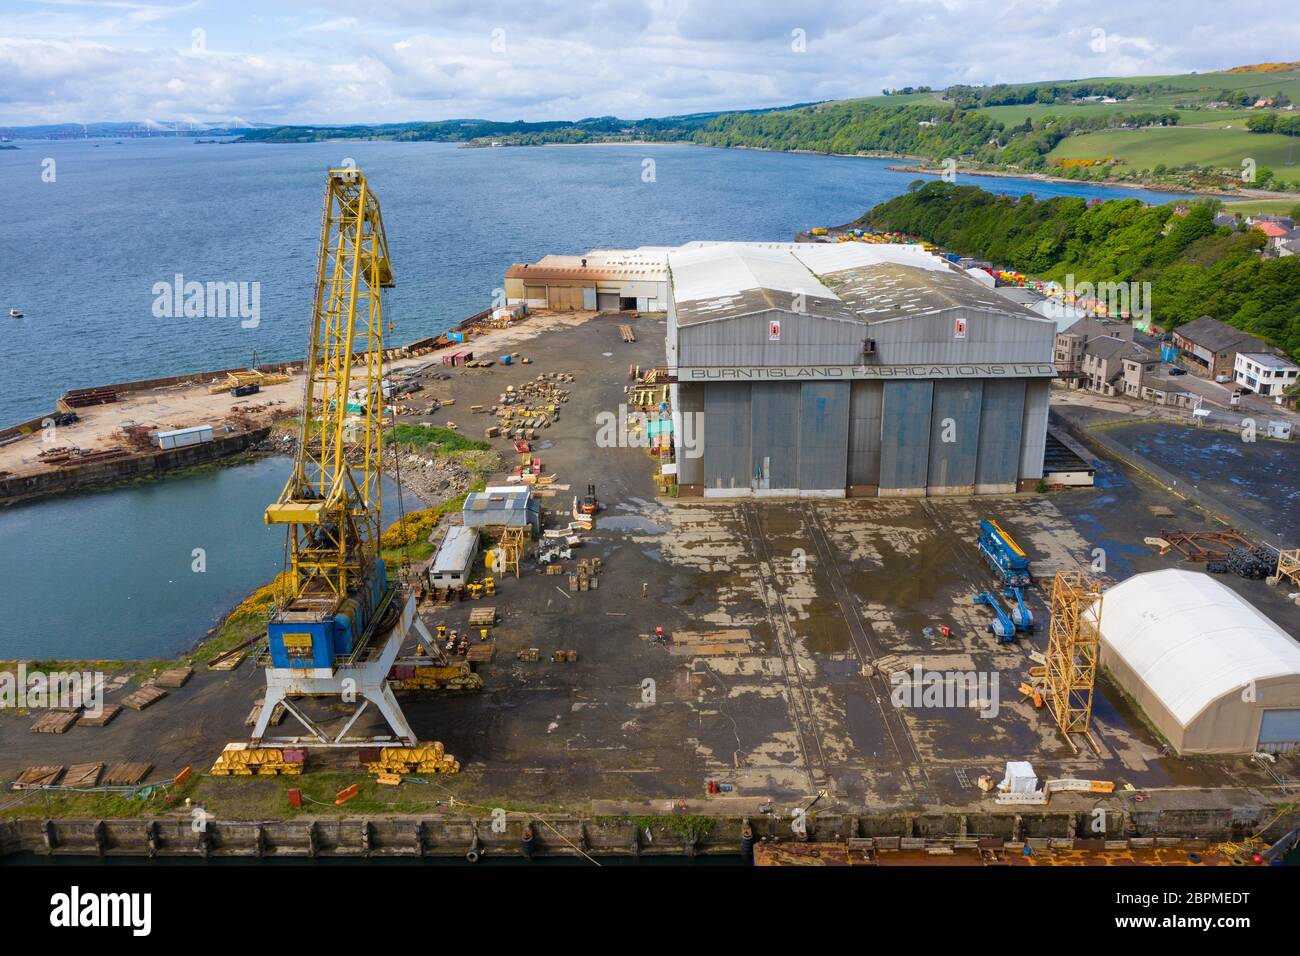 Vista aerea del cantiere Burntisland Fabrications Ltd (BiFab) a Burntisland a Fife, Scozia, Regno Unito Foto Stock